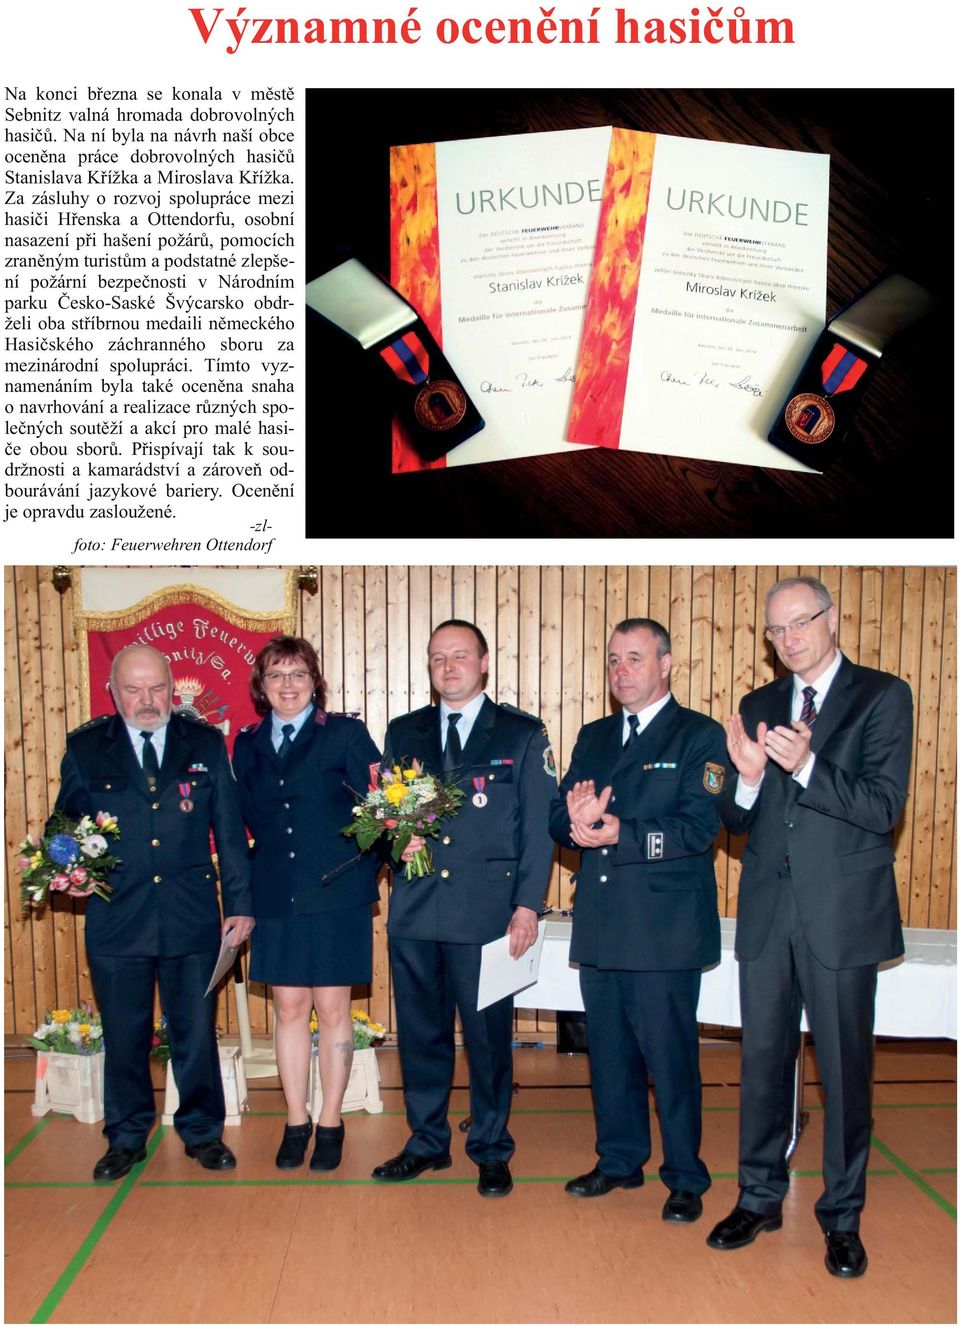 Èesko-Saské Švýcarsko obdrželi oba støíbrnou medaili nìmeckého Hasièského záchranného sboru za mezinárodní spolupráci.